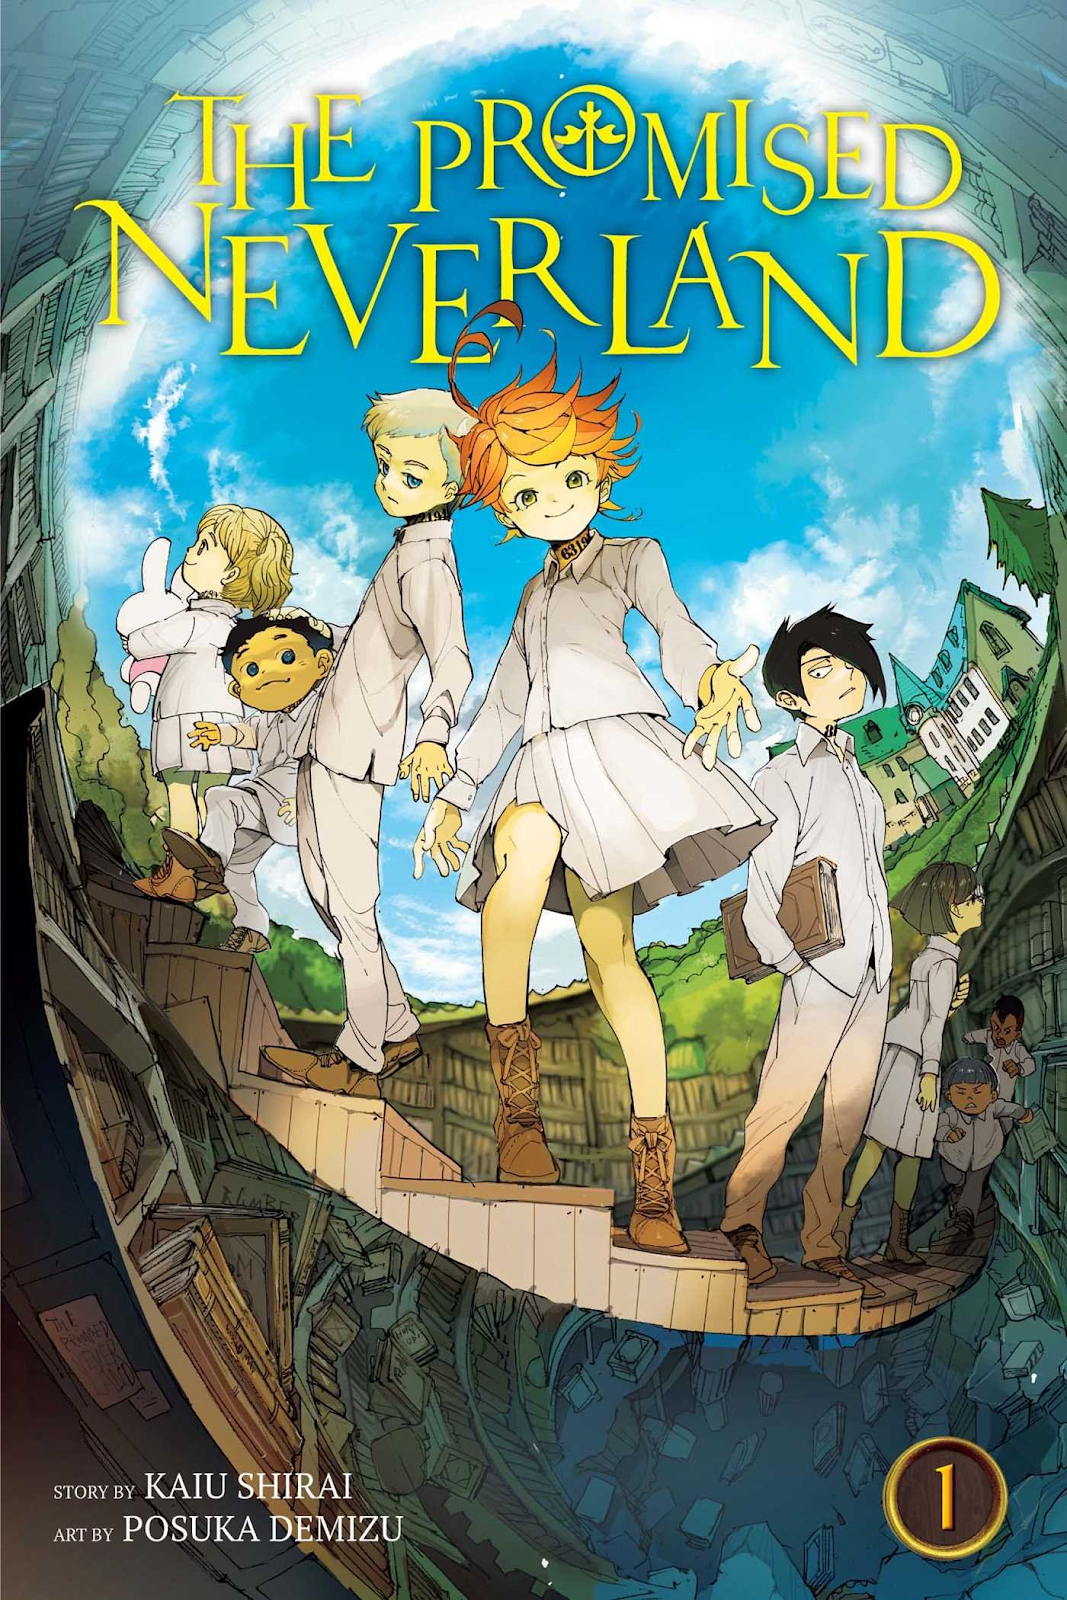 ANIME The Promised Neverland - Yakusoku in Neverland Synopsis, Season 2,  Subtitled and History? 